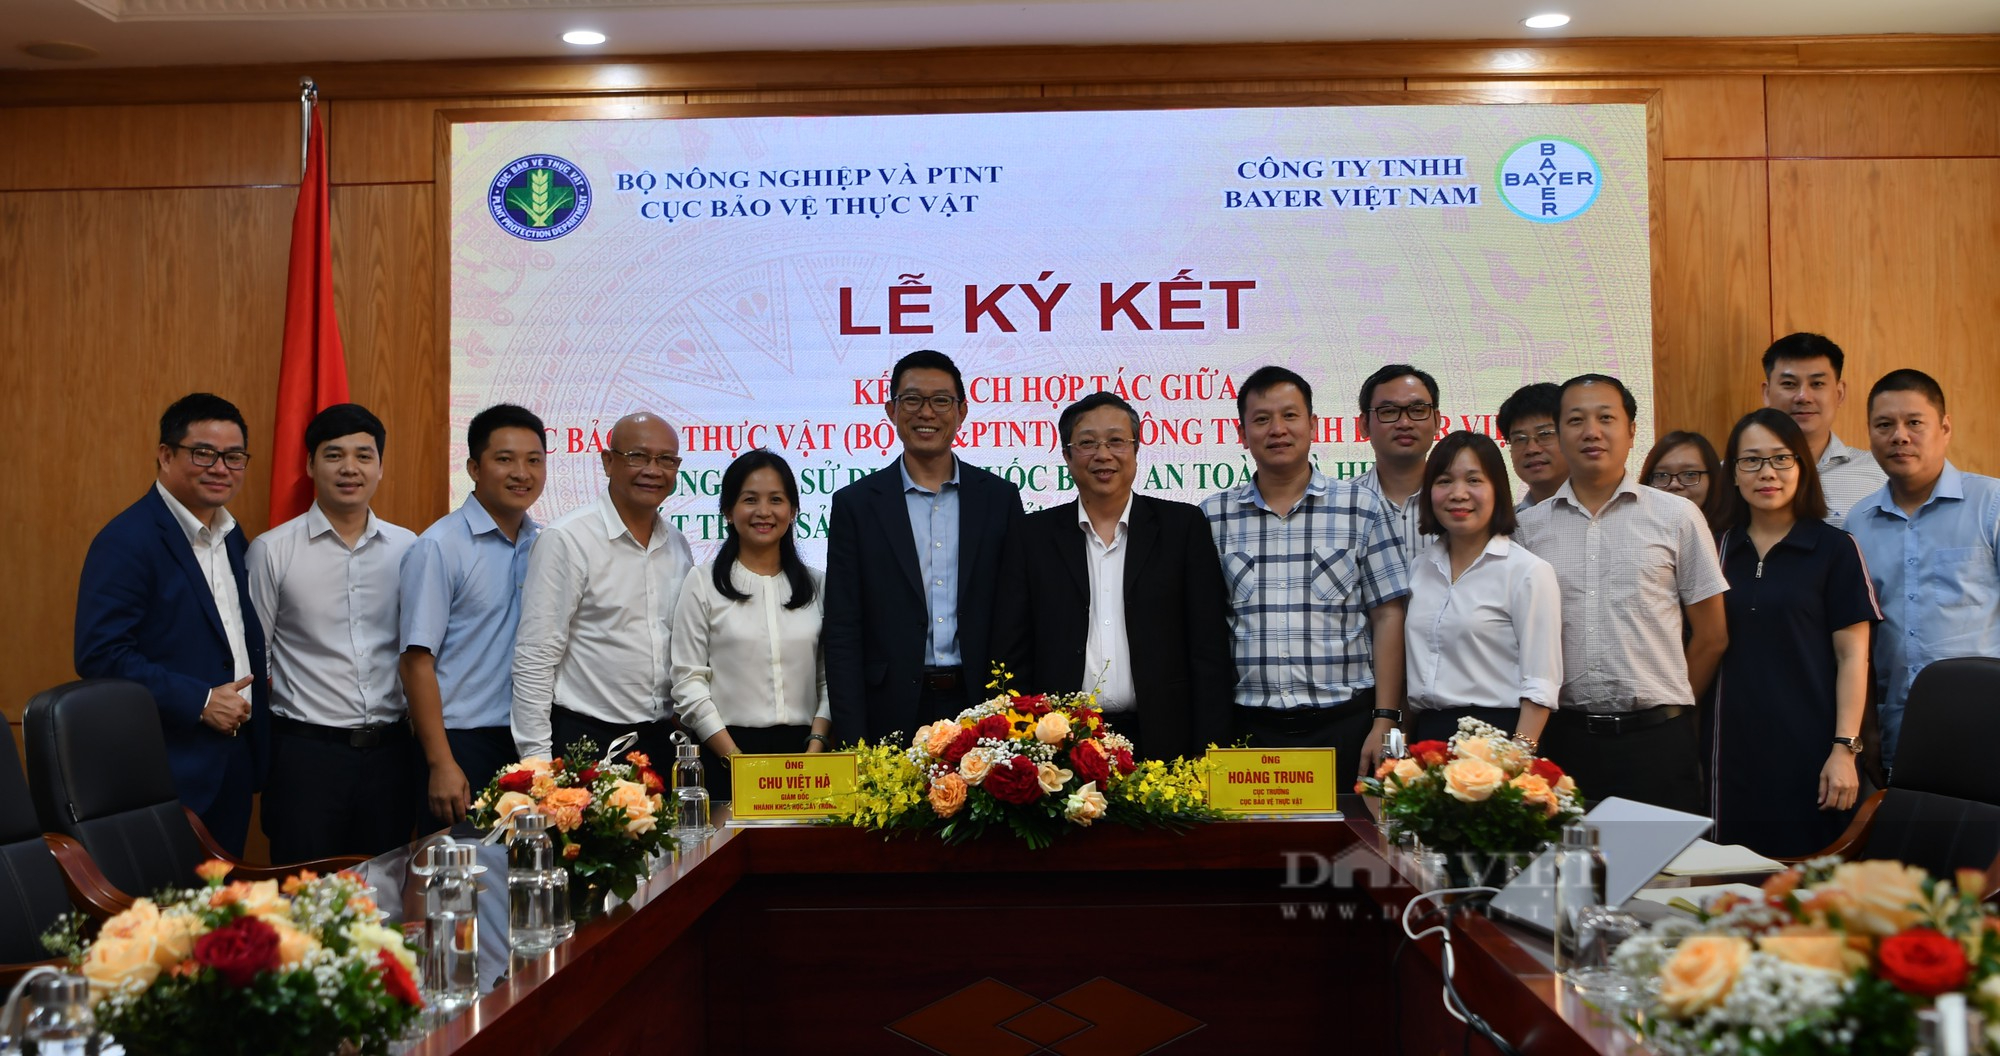 Cục BVTV và Bayer Việt Nam ký hợp tác xây dựng các mô hình sử dụng thuốc BVTV an toàn, hiệu quả - Ảnh 4.